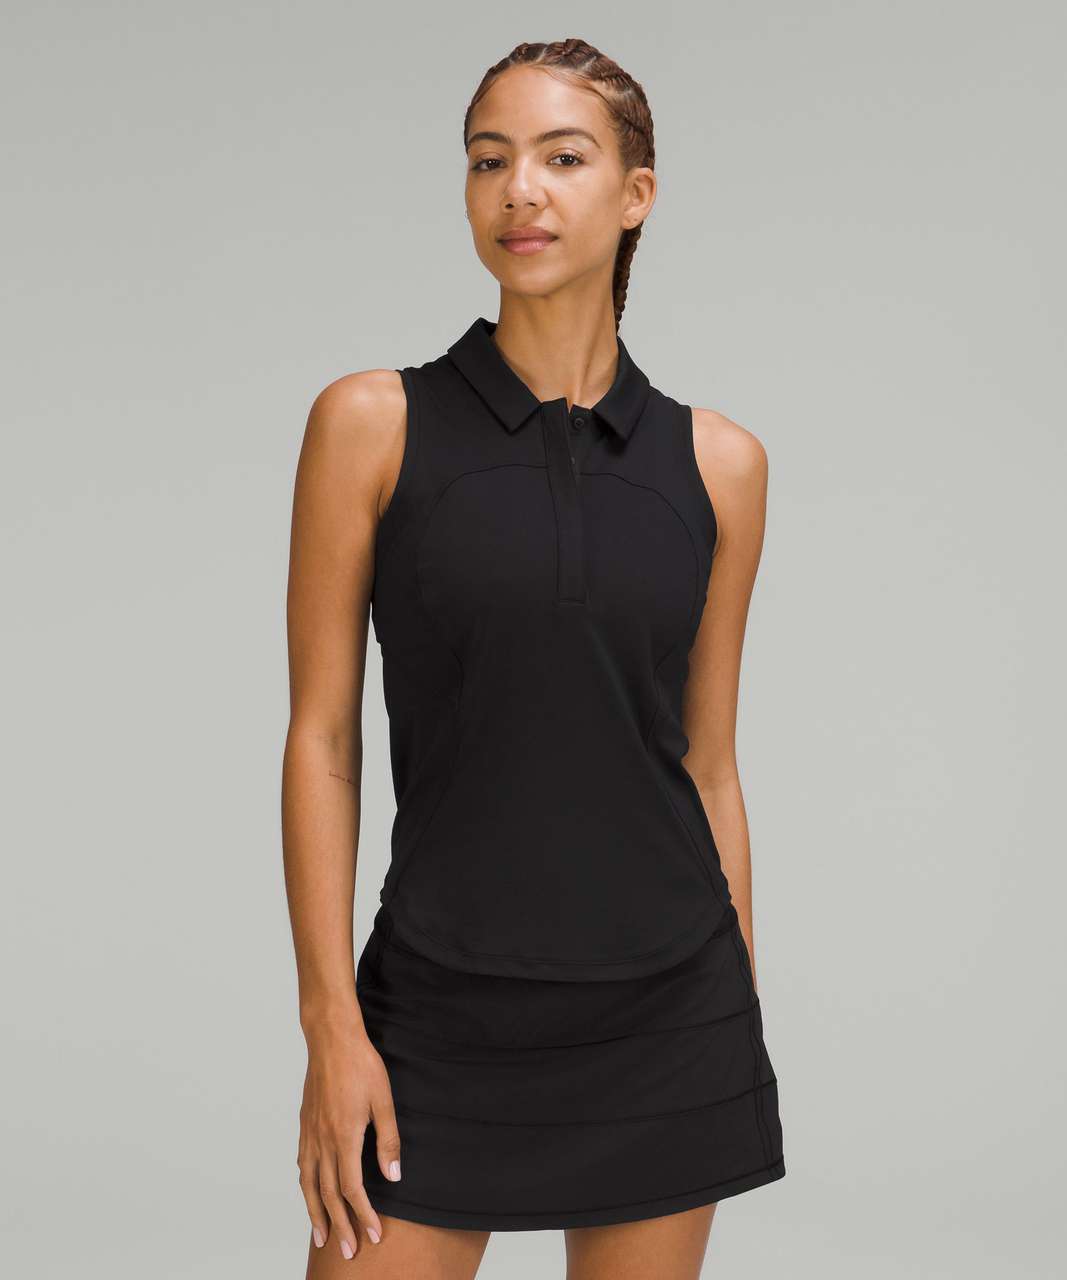 Lululemon Quick-Drying Sleeveless Polo Shirt - Black